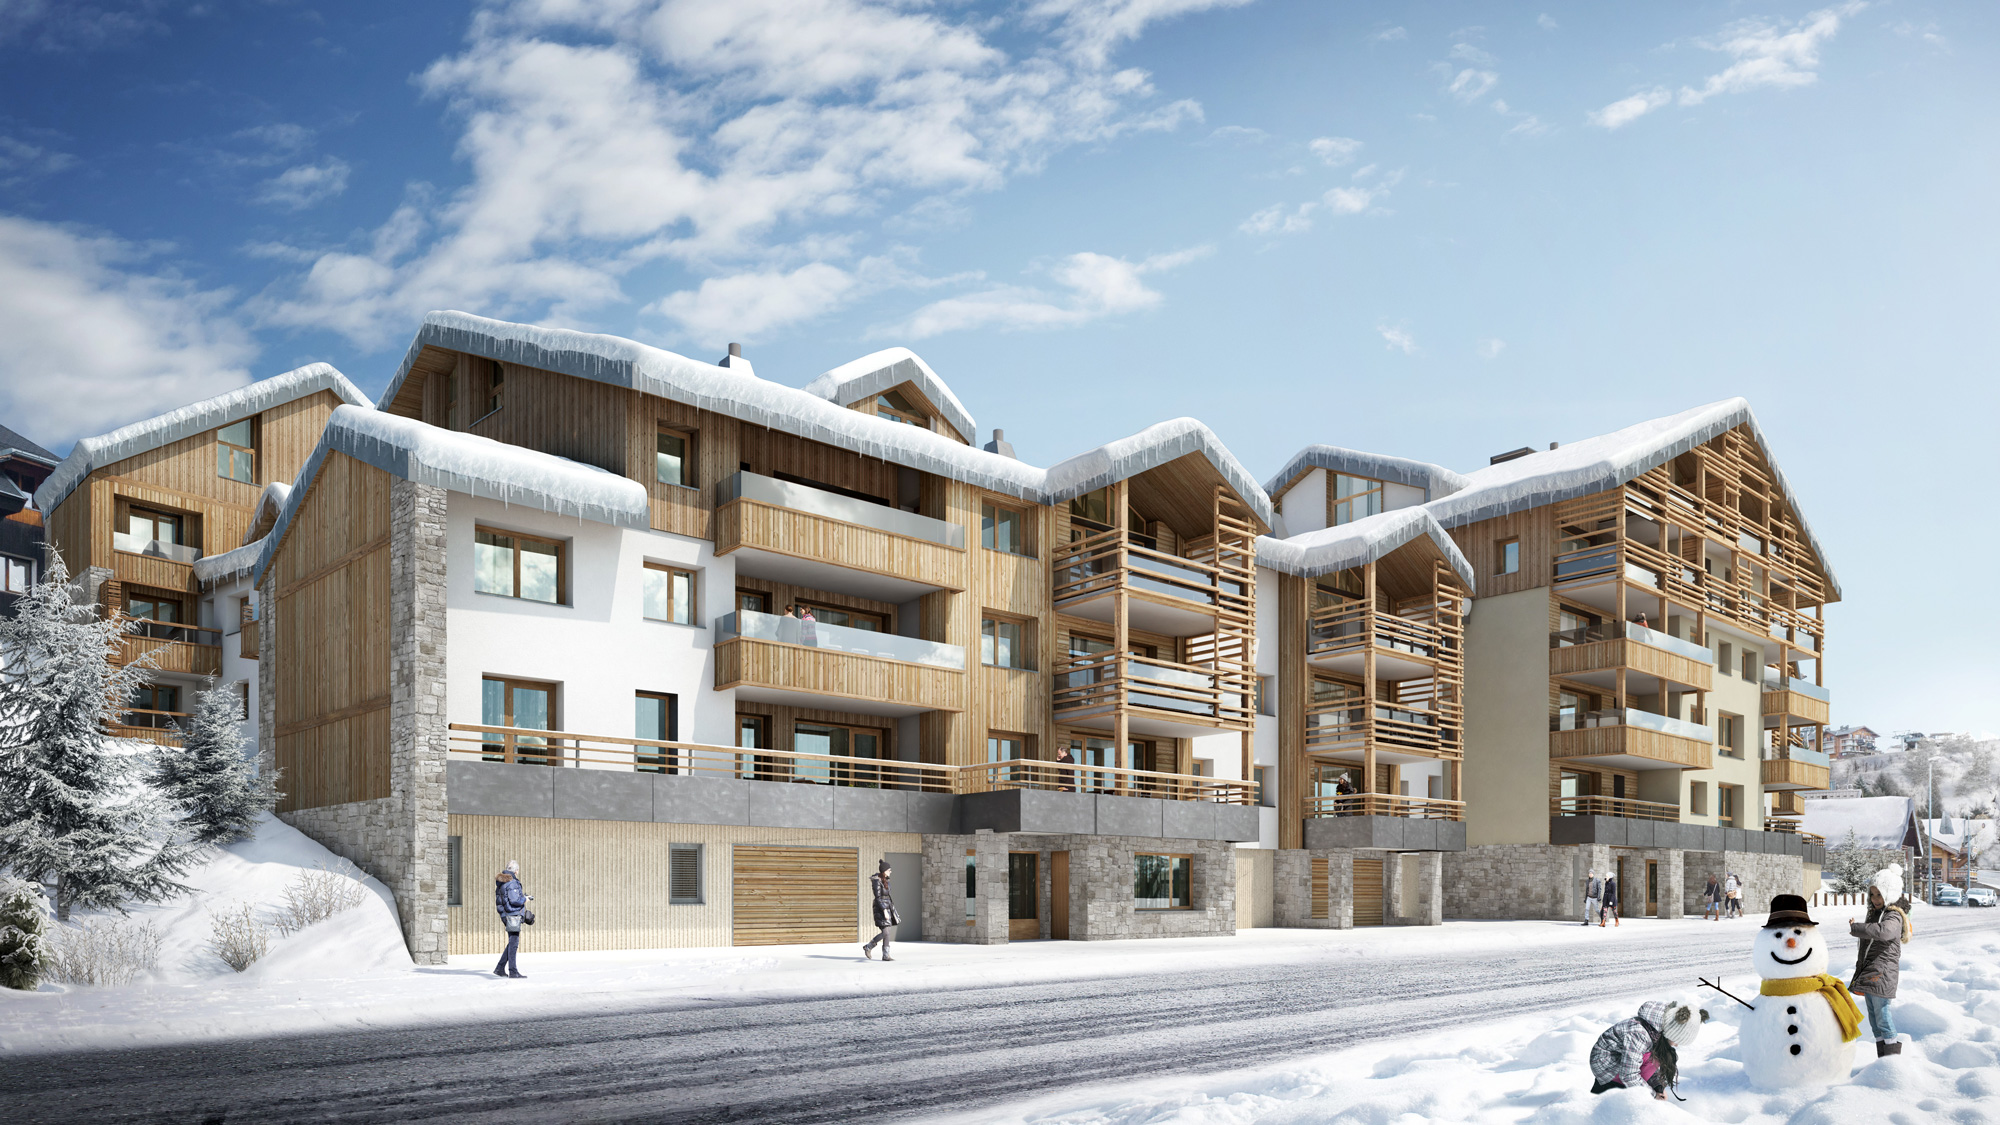 Programme immobilier neuf Fermes de l'Alpe à l'Alpe d'Huez